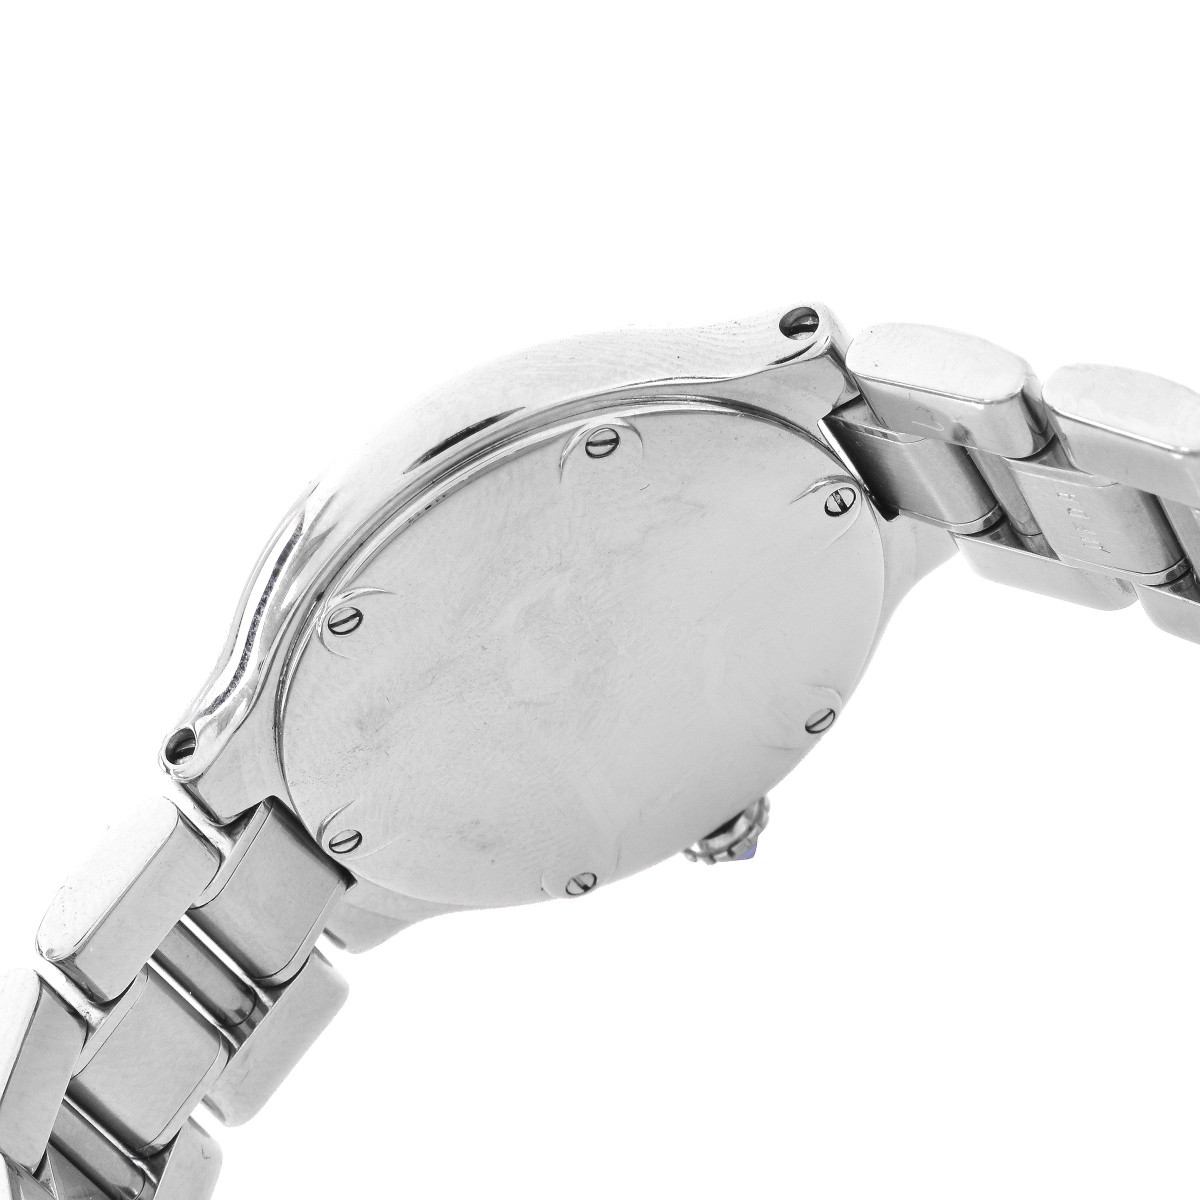 Cartier 1340 Watch